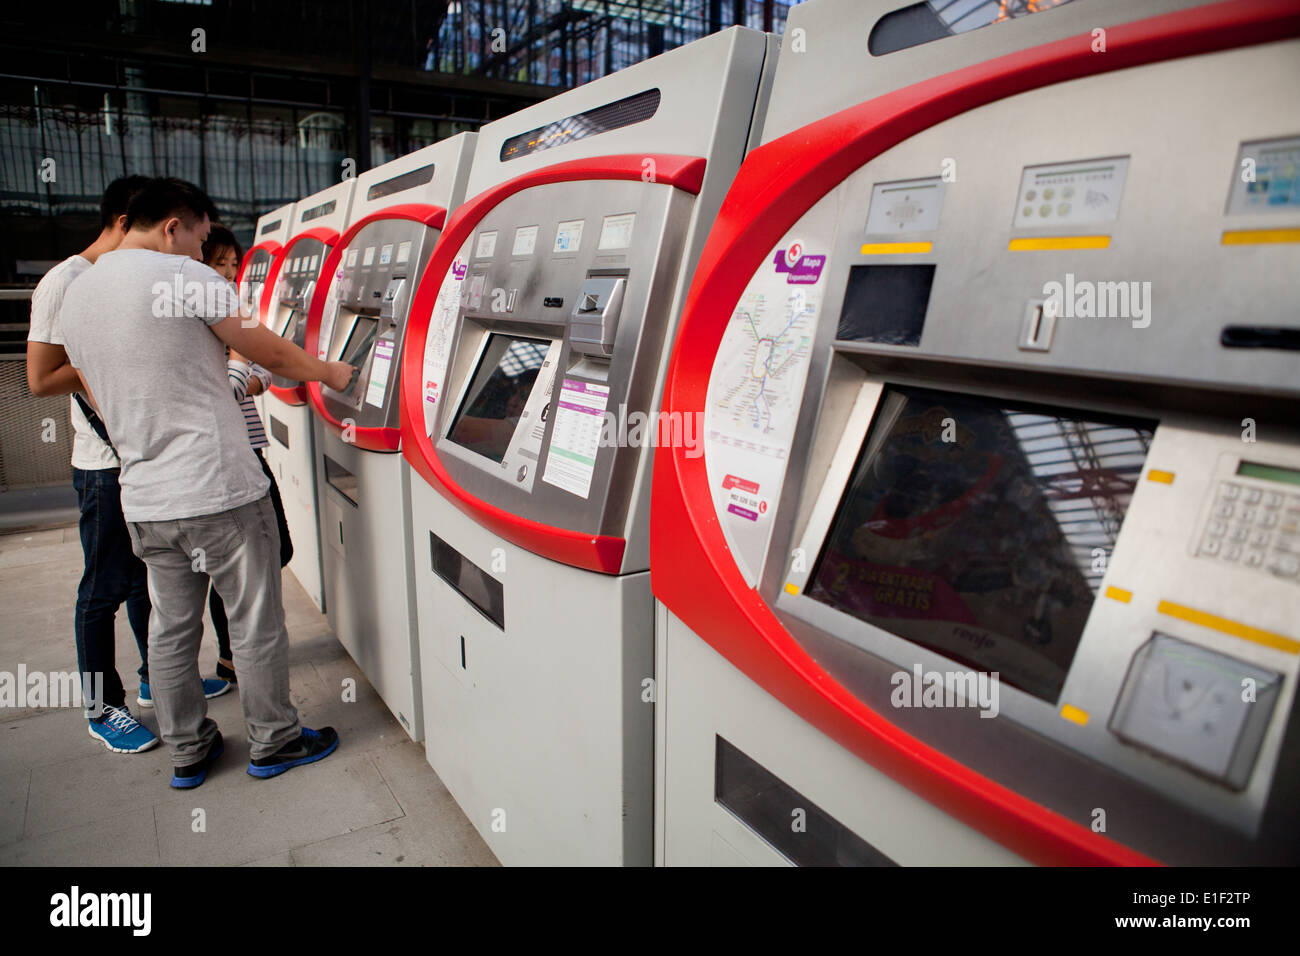 Les distributeurs de billets libre-service à la station de métro Principe Pio Banque D'Images